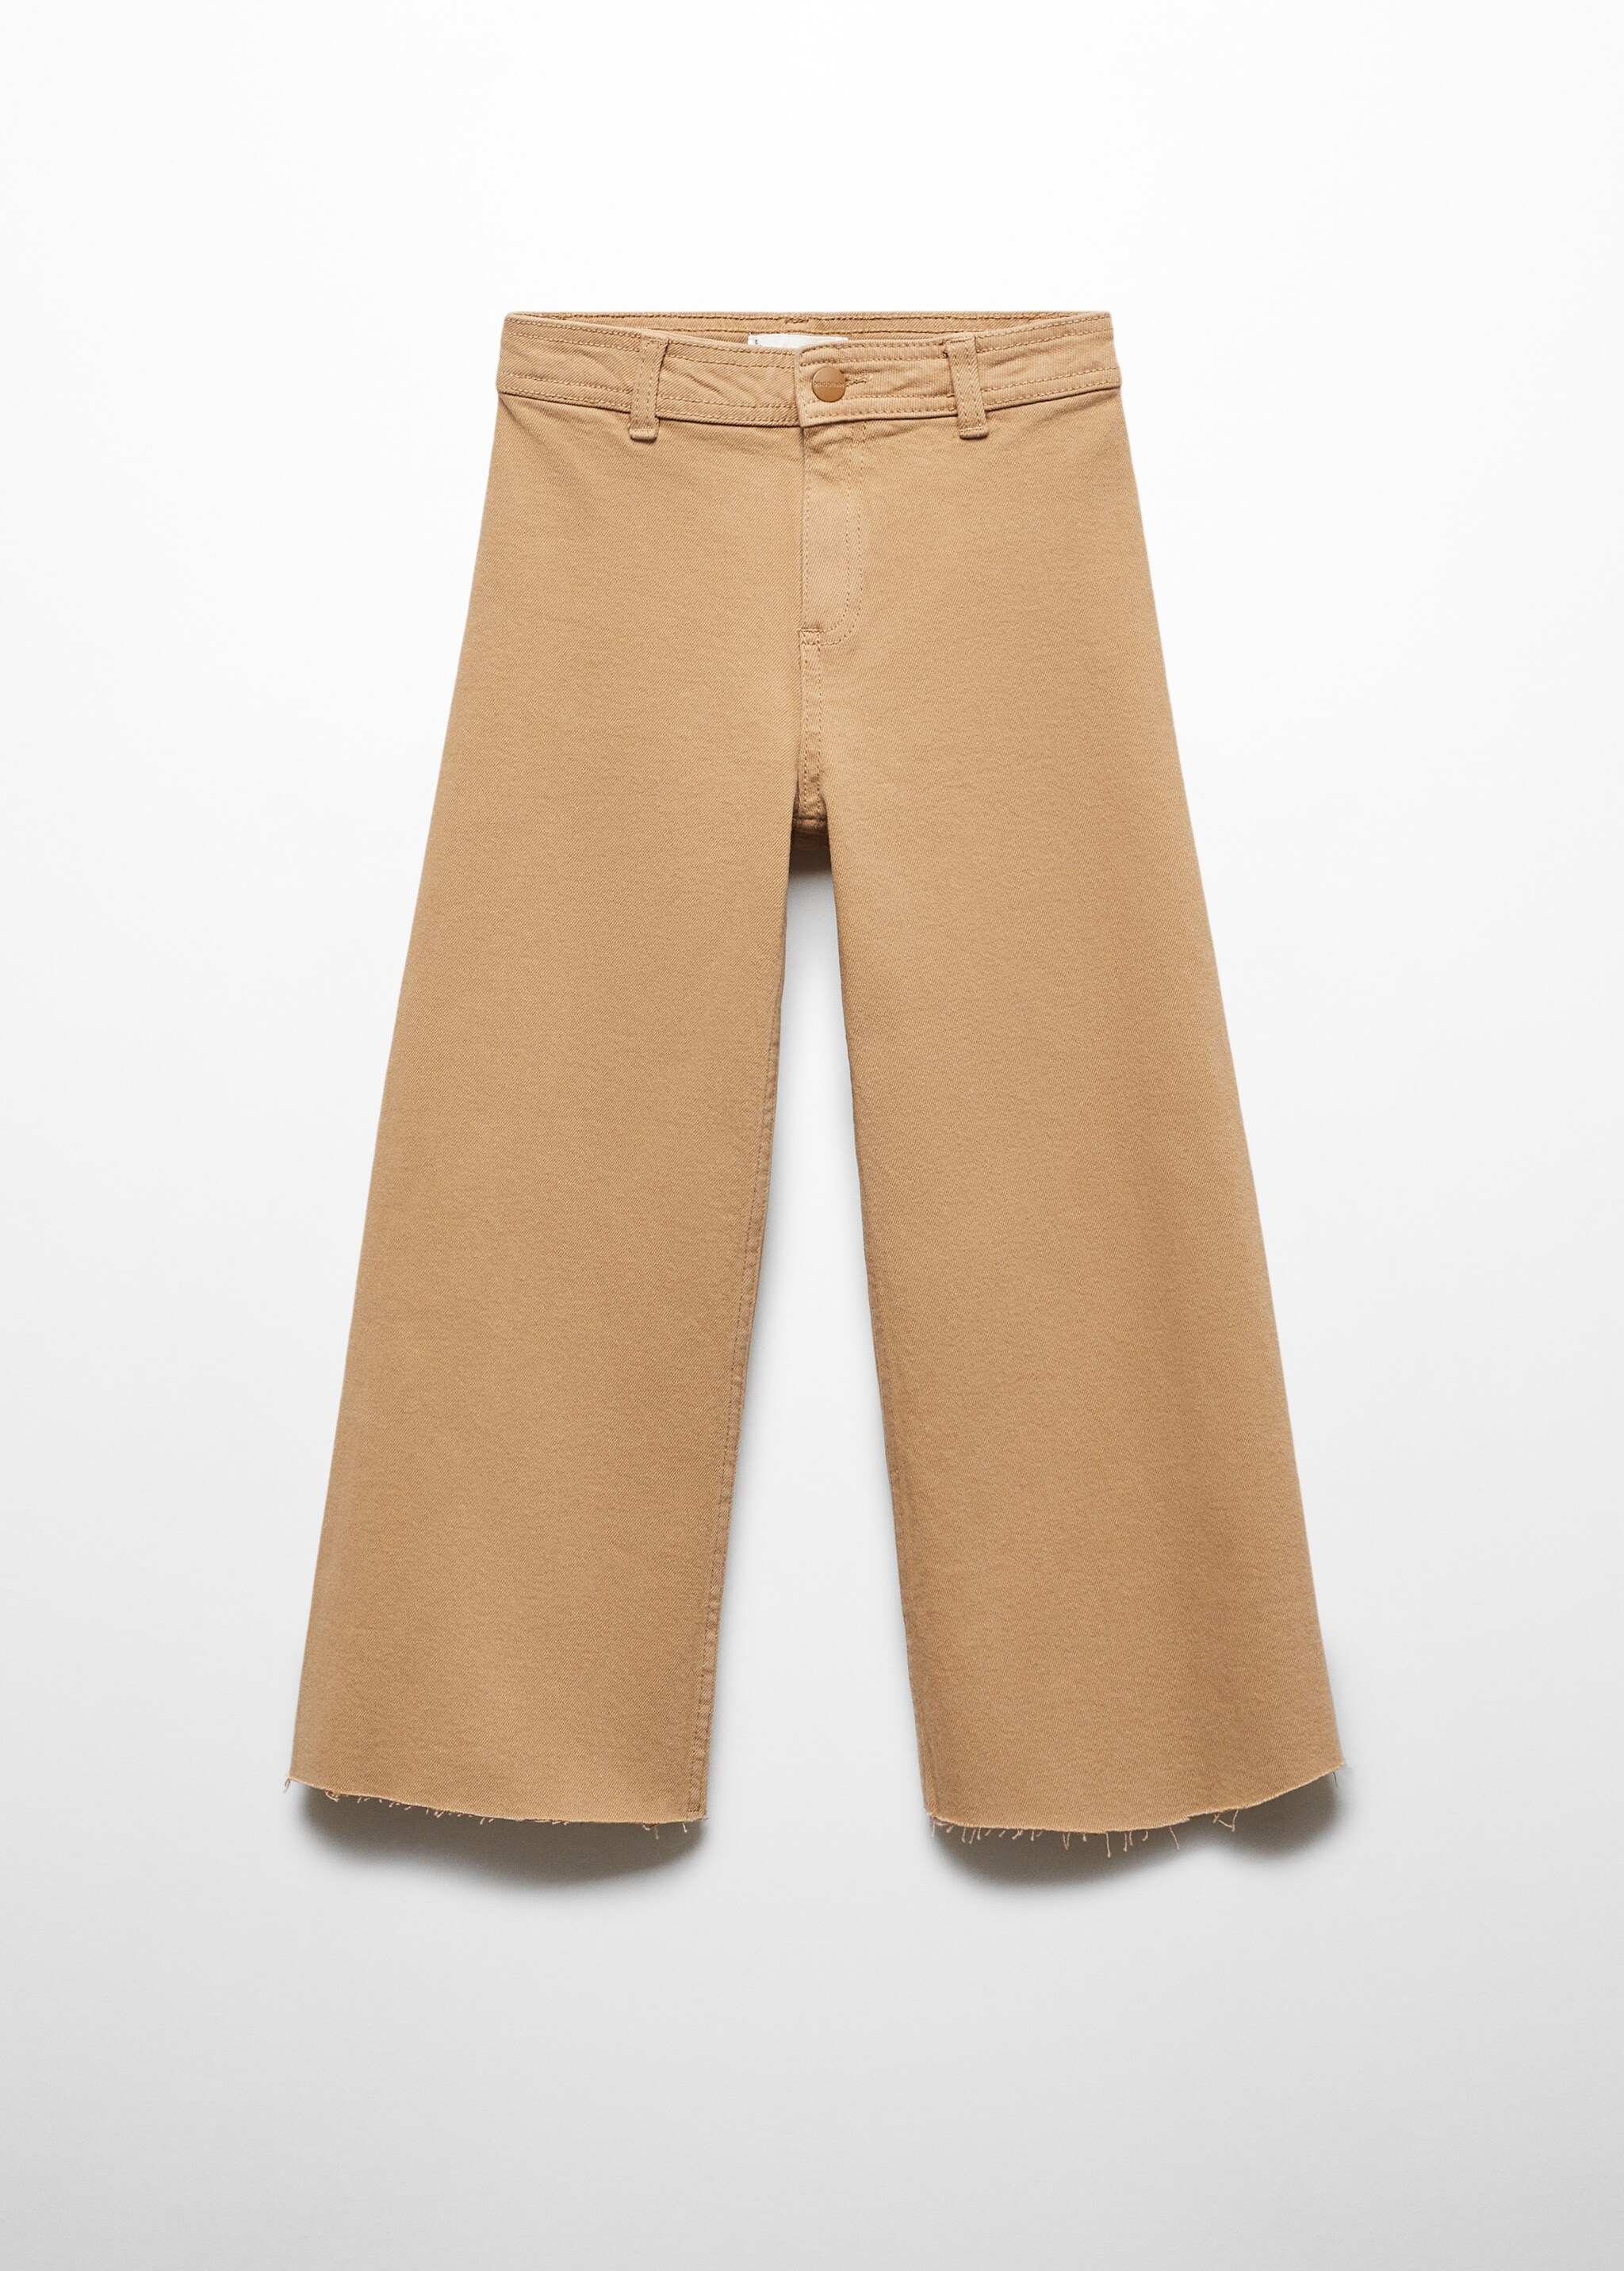 Jeans culotte bajo deshilachado - Artículo sin modelo